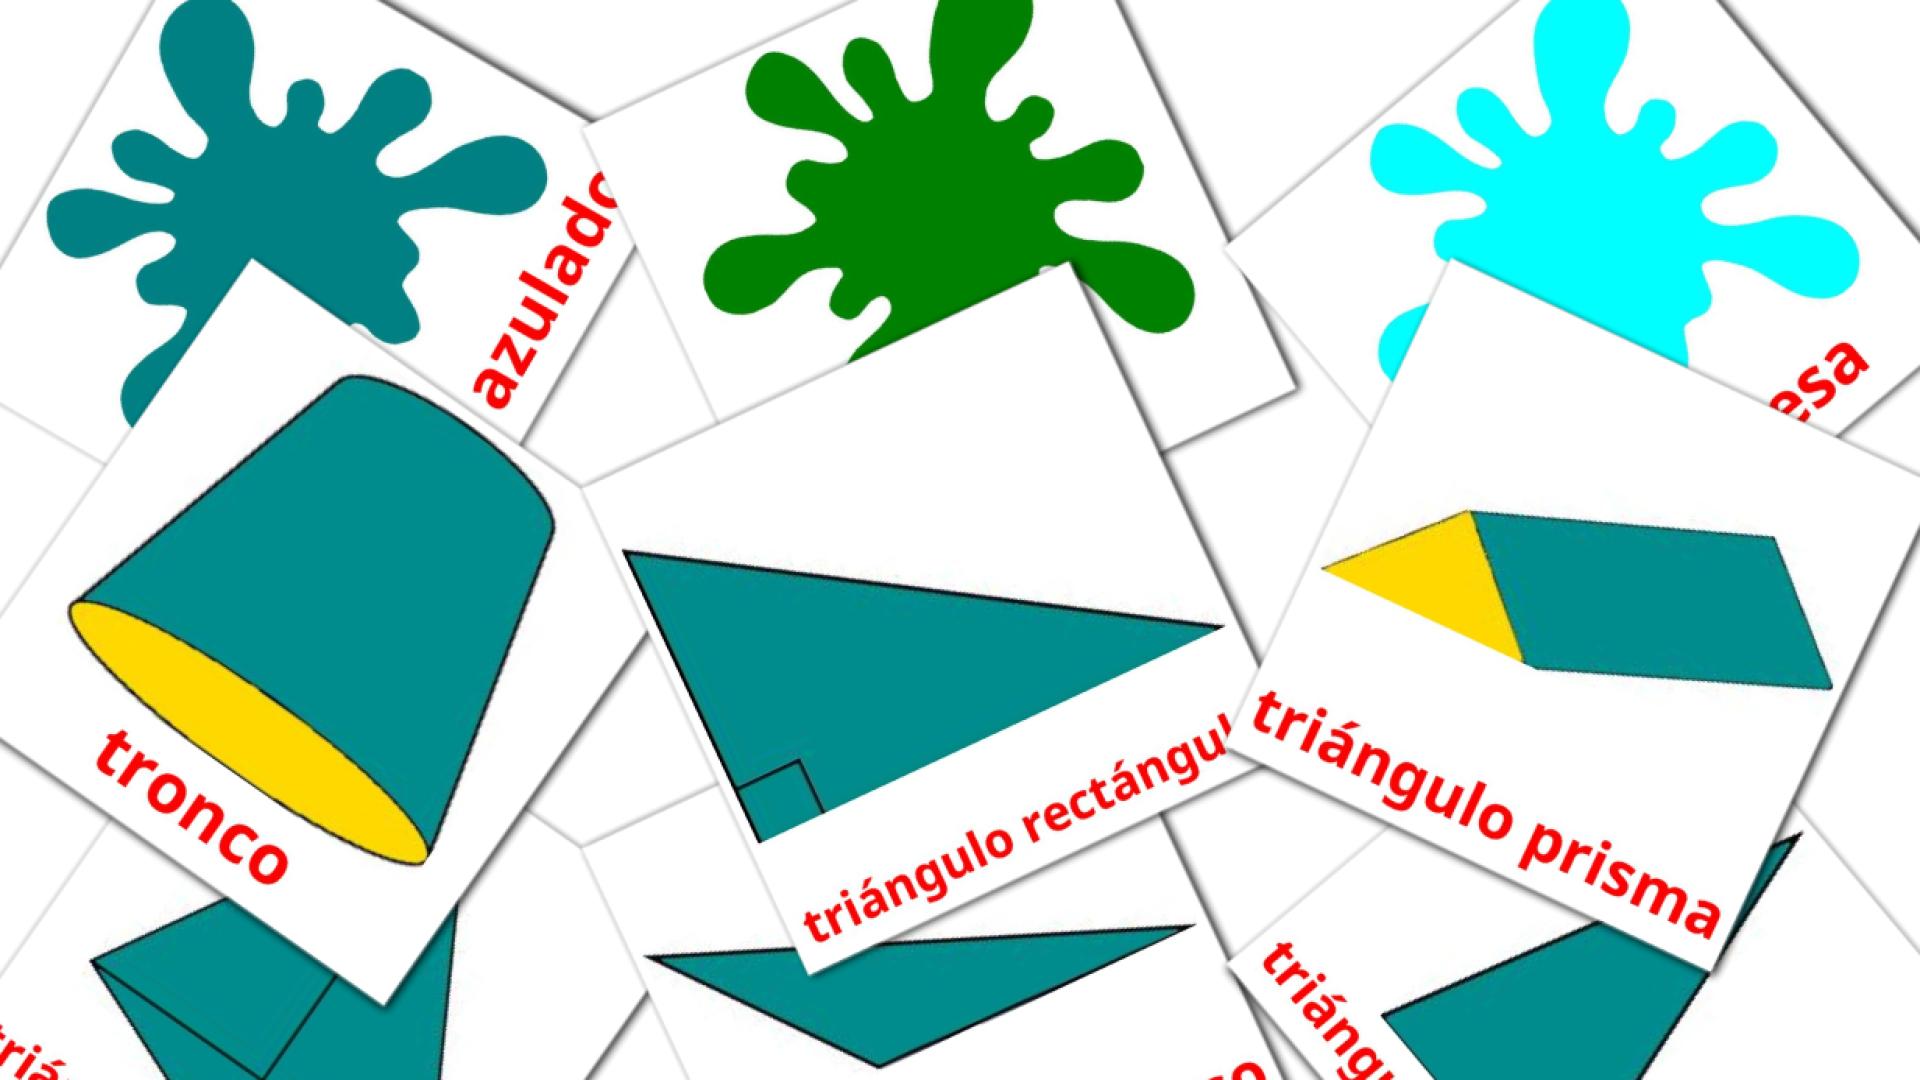 Spanisch Colores y formase Vokabelkarteikarten